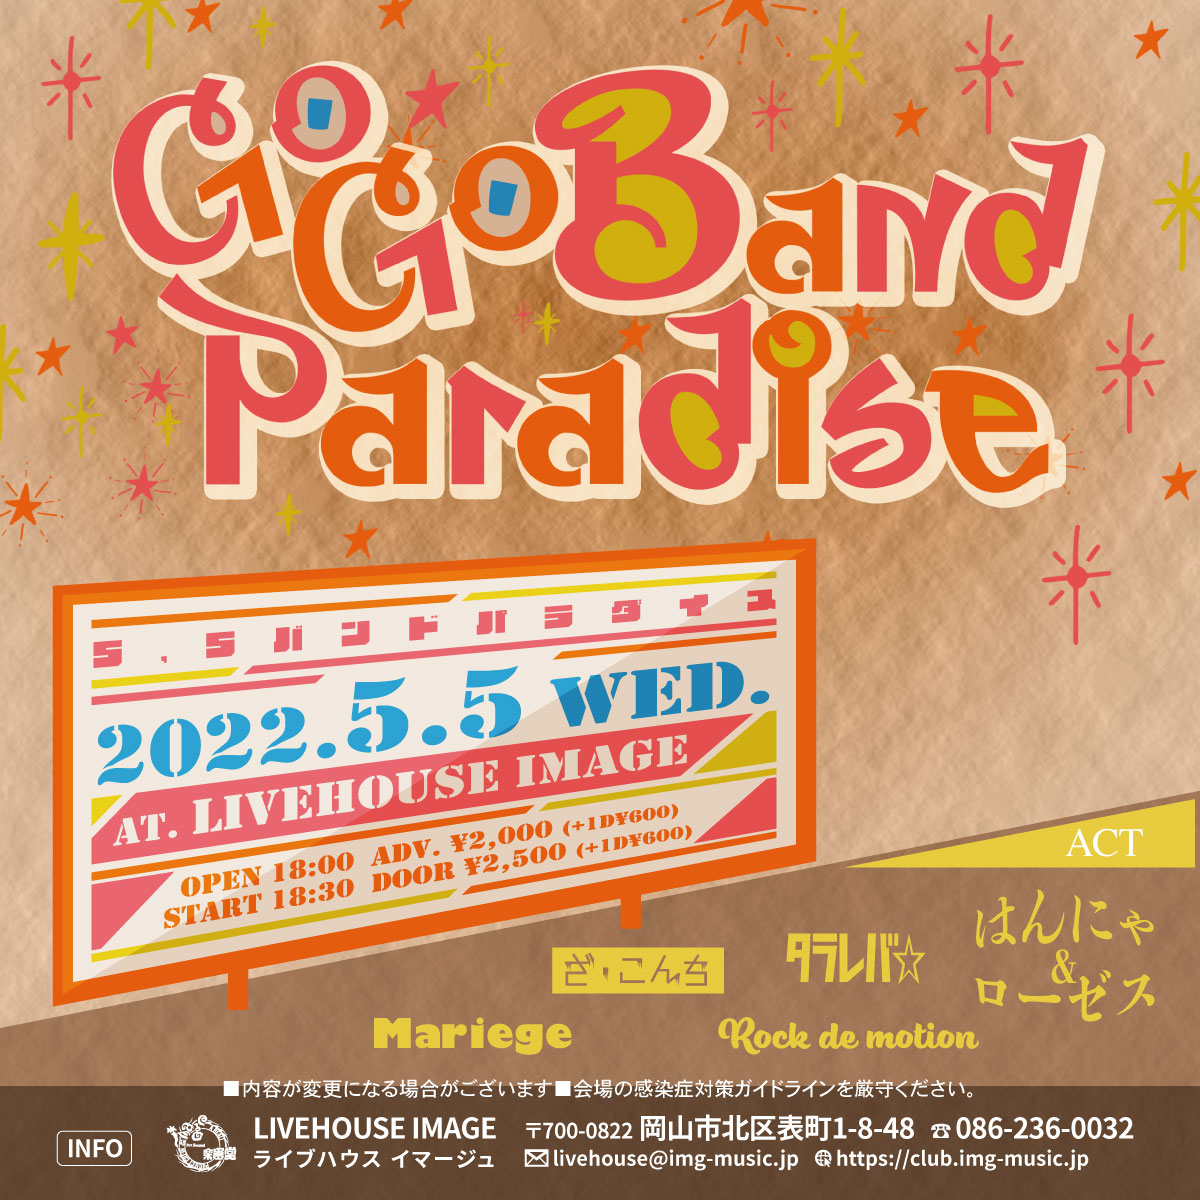 Go Go Band Paradise(5-5-バンドパラダイス）